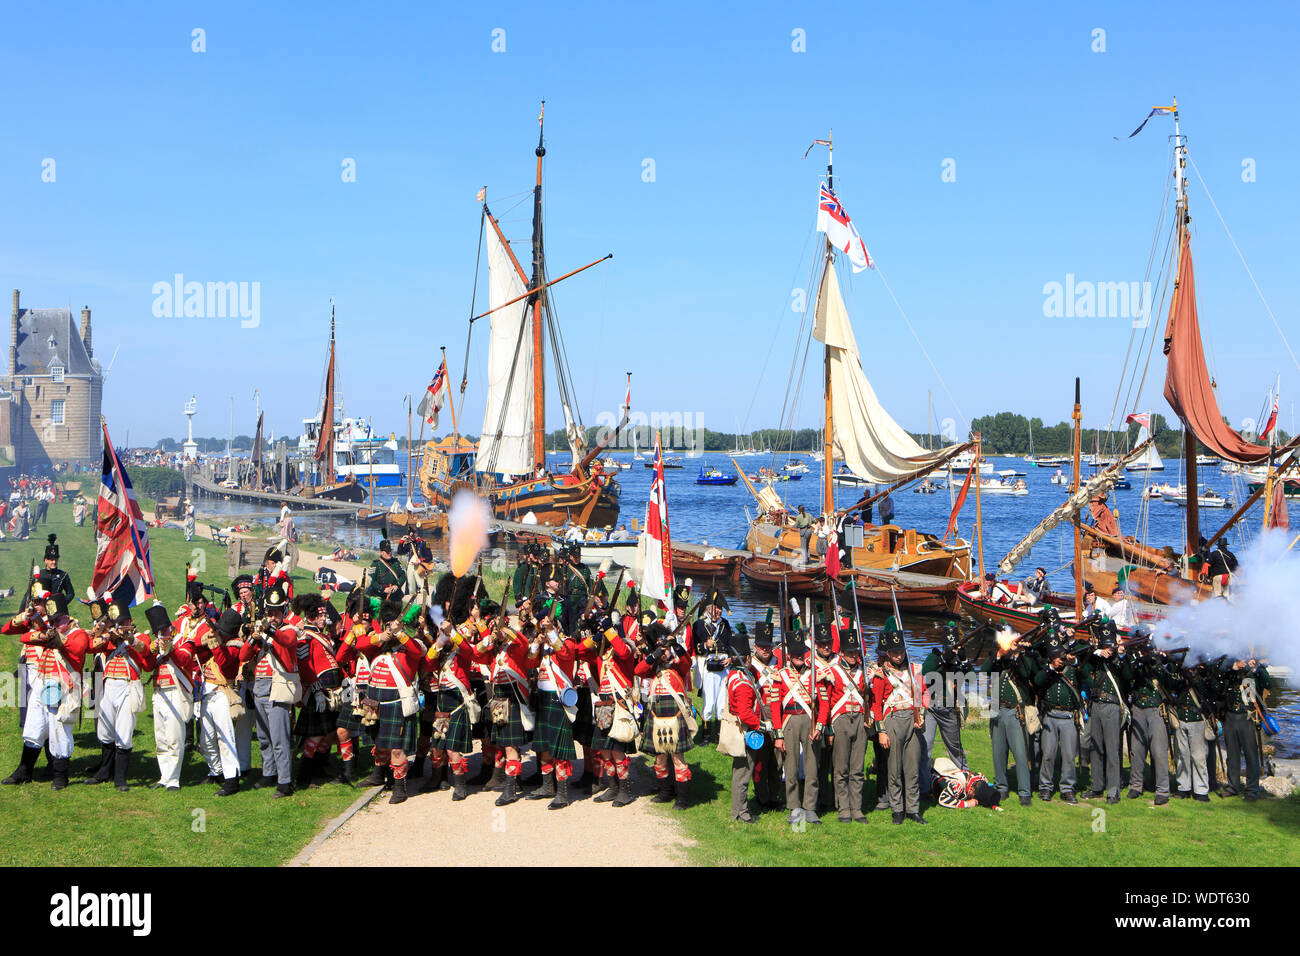 Soldats britanniques reproduisant l'invasion de la ville médiévale de Veere, Pays-Bas, au cours de la 210e anniversaire de la campagne de 1809 de Walcheren Banque D'Images